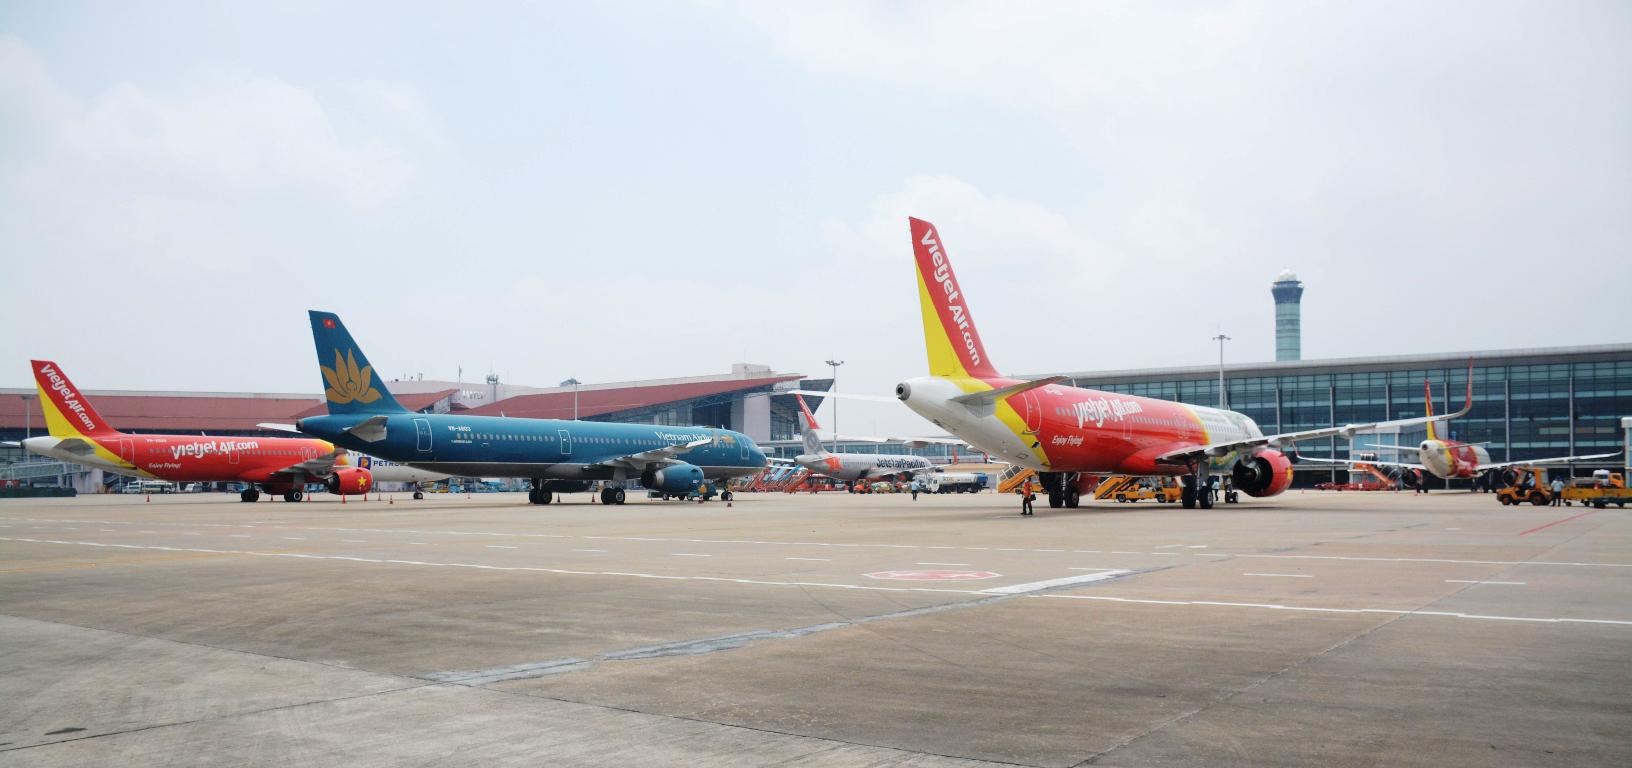 Vietnam Airlines là hãng hàng không do nhà nước sở hữu đến 86% vốn điều lệ